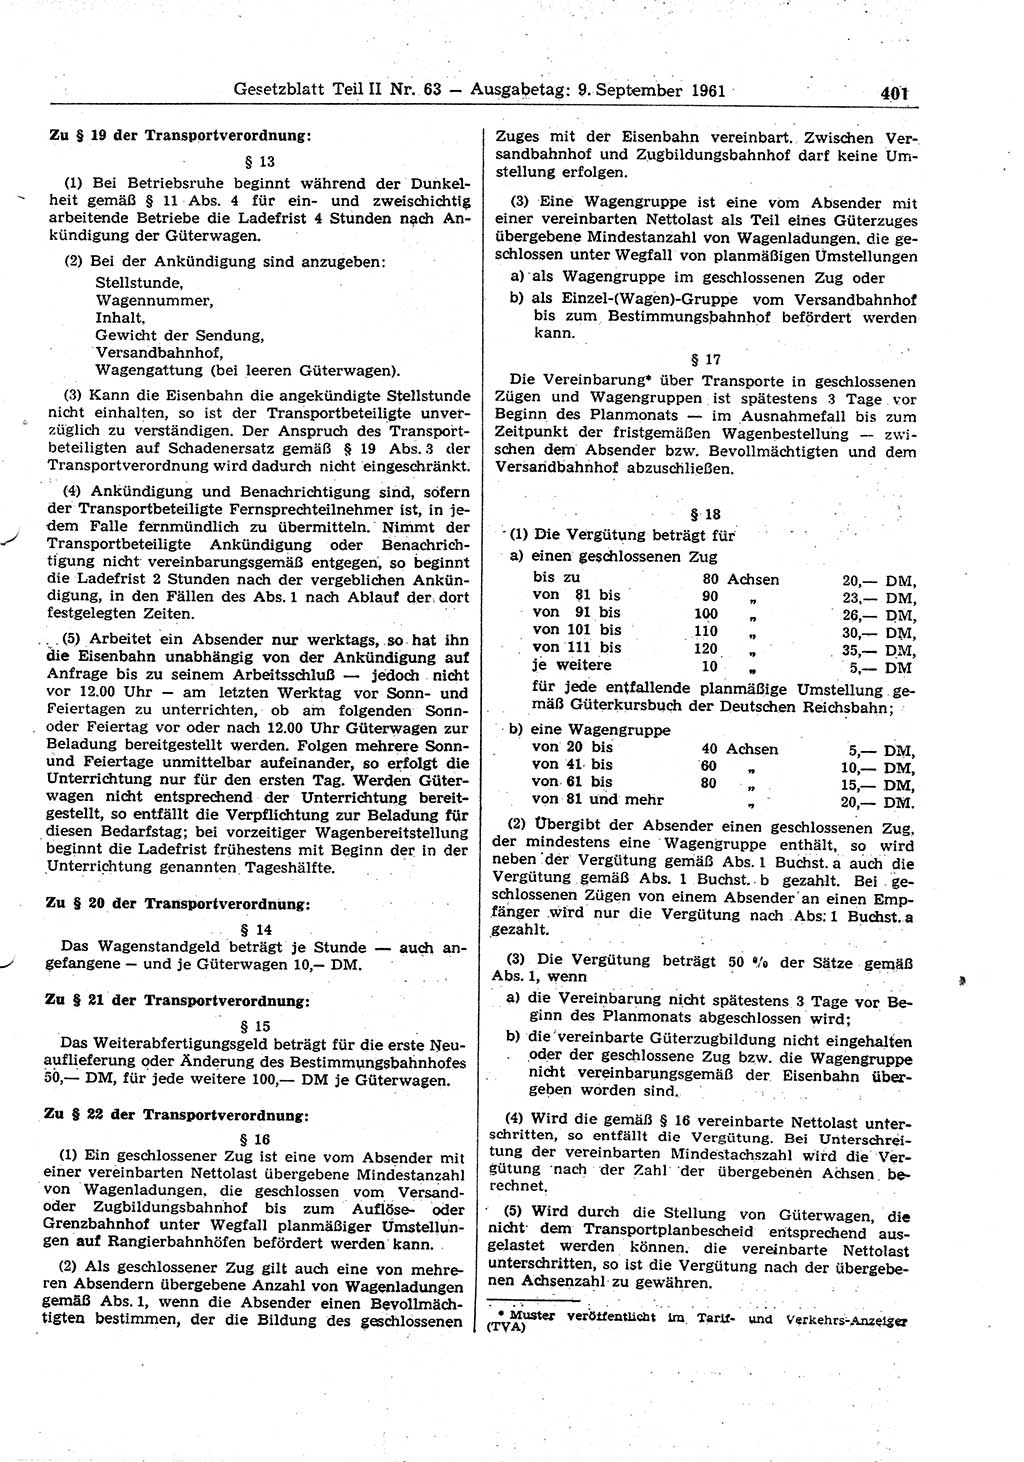 Gesetzblatt (GBl.) der Deutschen Demokratischen Republik (DDR) Teil ⅠⅠ 1961, Seite 401 (GBl. DDR ⅠⅠ 1961, S. 401)